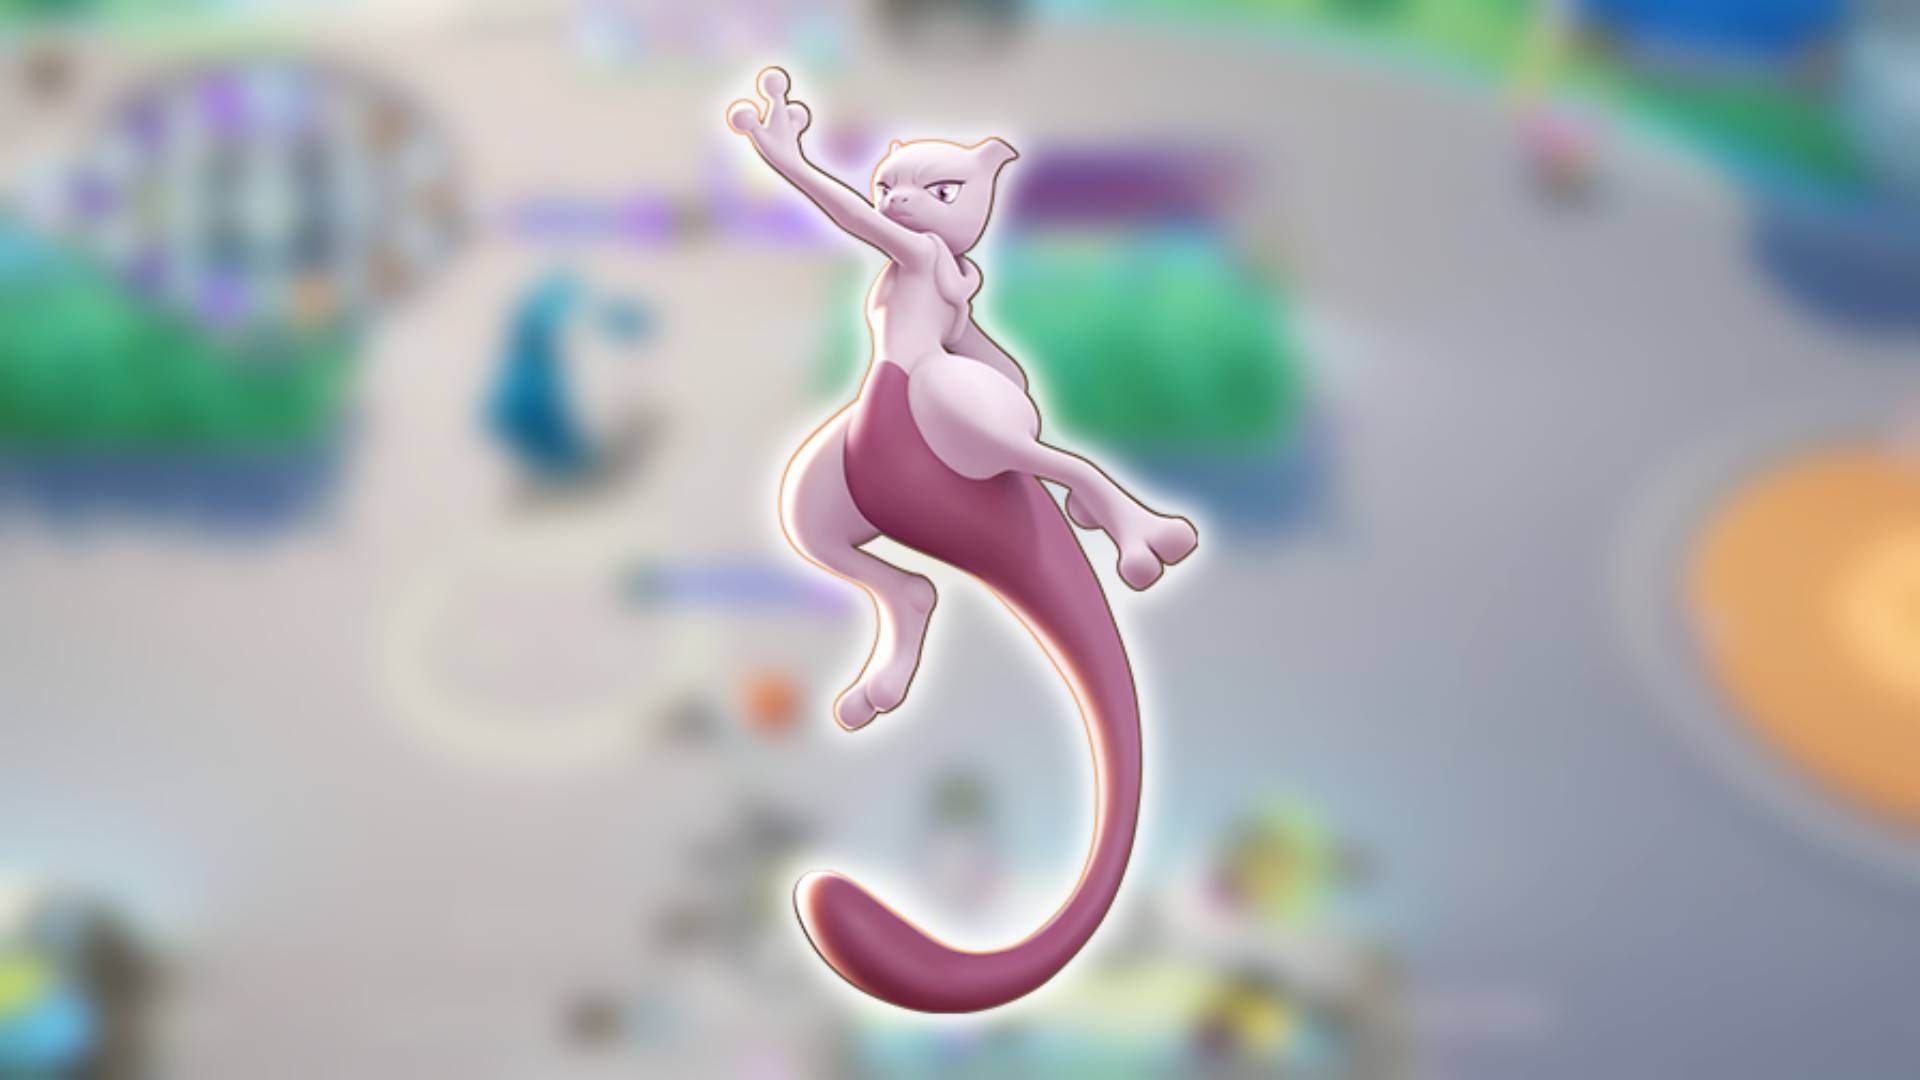 Mew, Pokémon UNITE Wiki